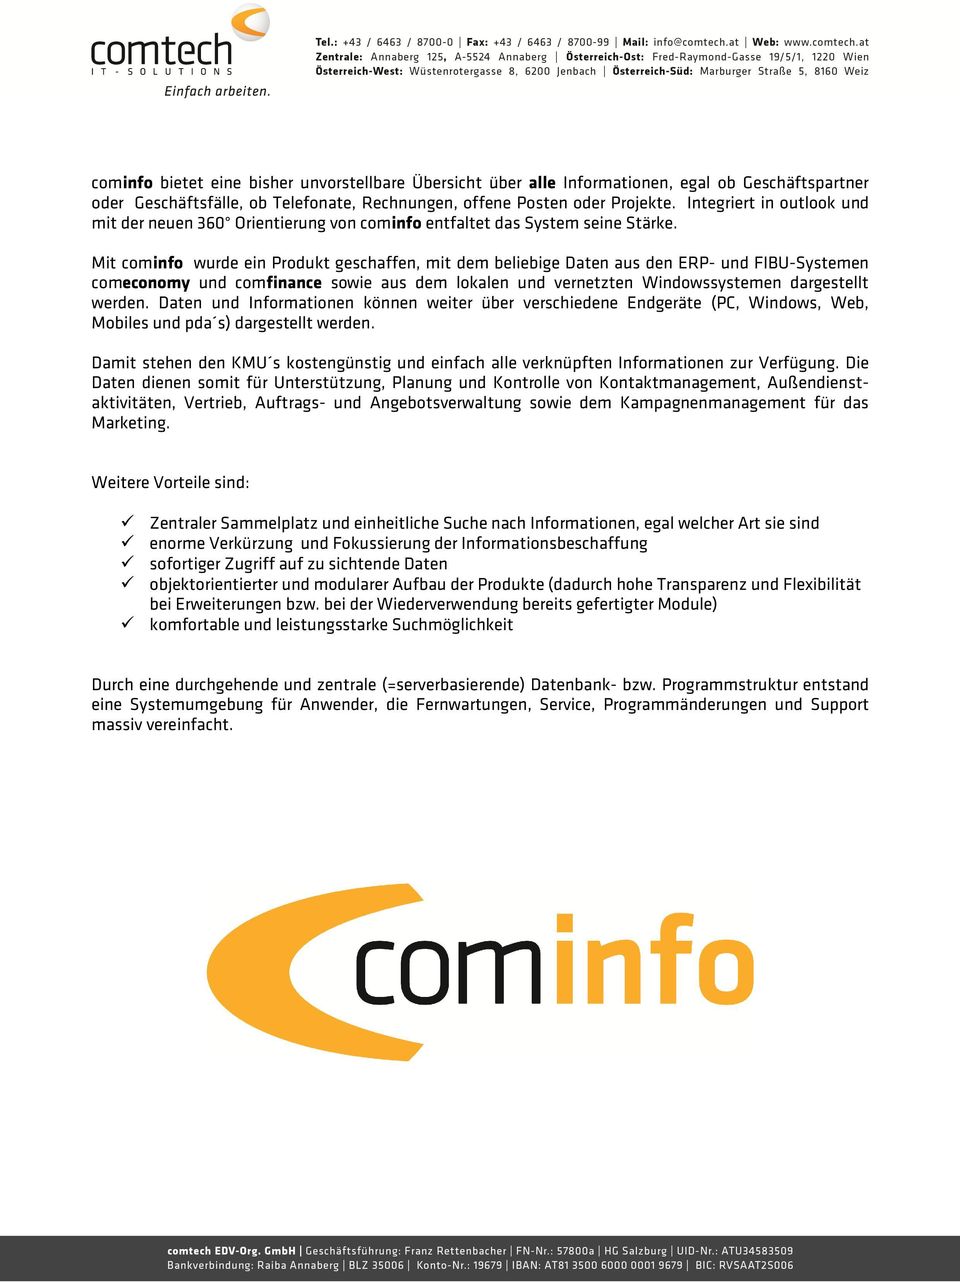 Mit cominfo wurde ein Produkt geschaffen, mit dem beliebige Daten aus den ERP- und FIBU-Systemen comeconomy und comfinance sowie aus dem lokalen und vernetzten Windowssystemen dargestellt werden.